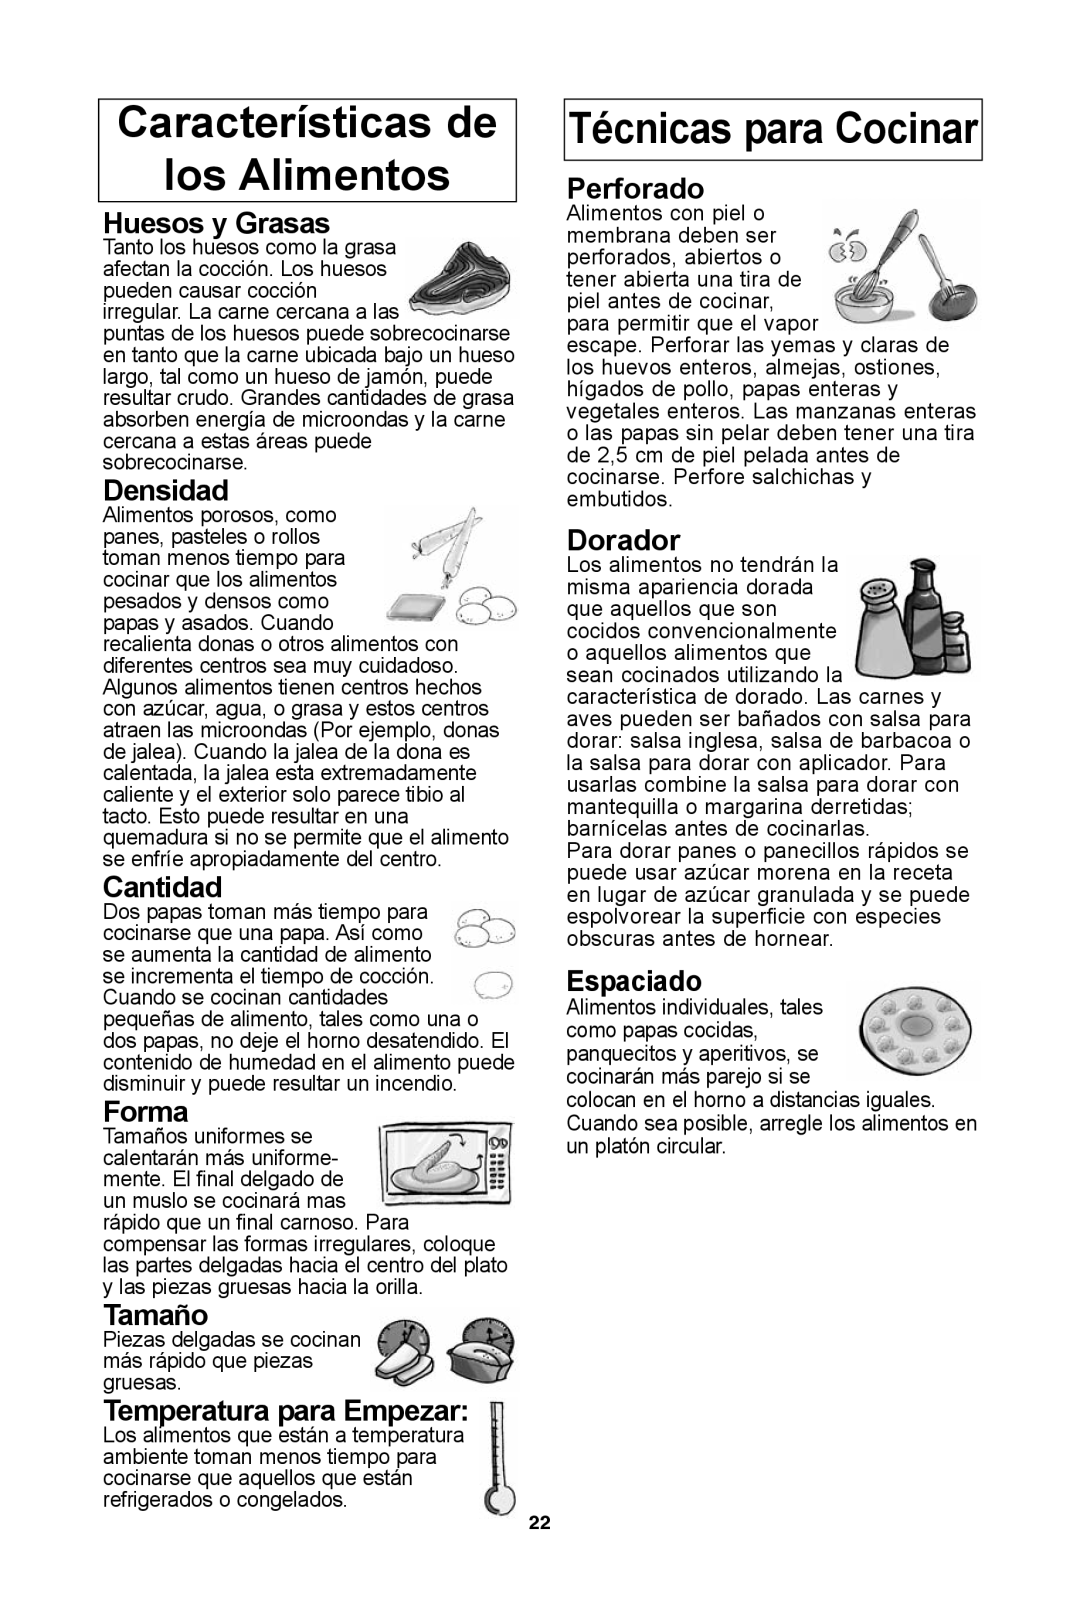 Panasonic NN-SD972S Características de los Alimentos, Huesos y Grasas, Densidad, Cantidad, Forma, Tamaño, Perforado 